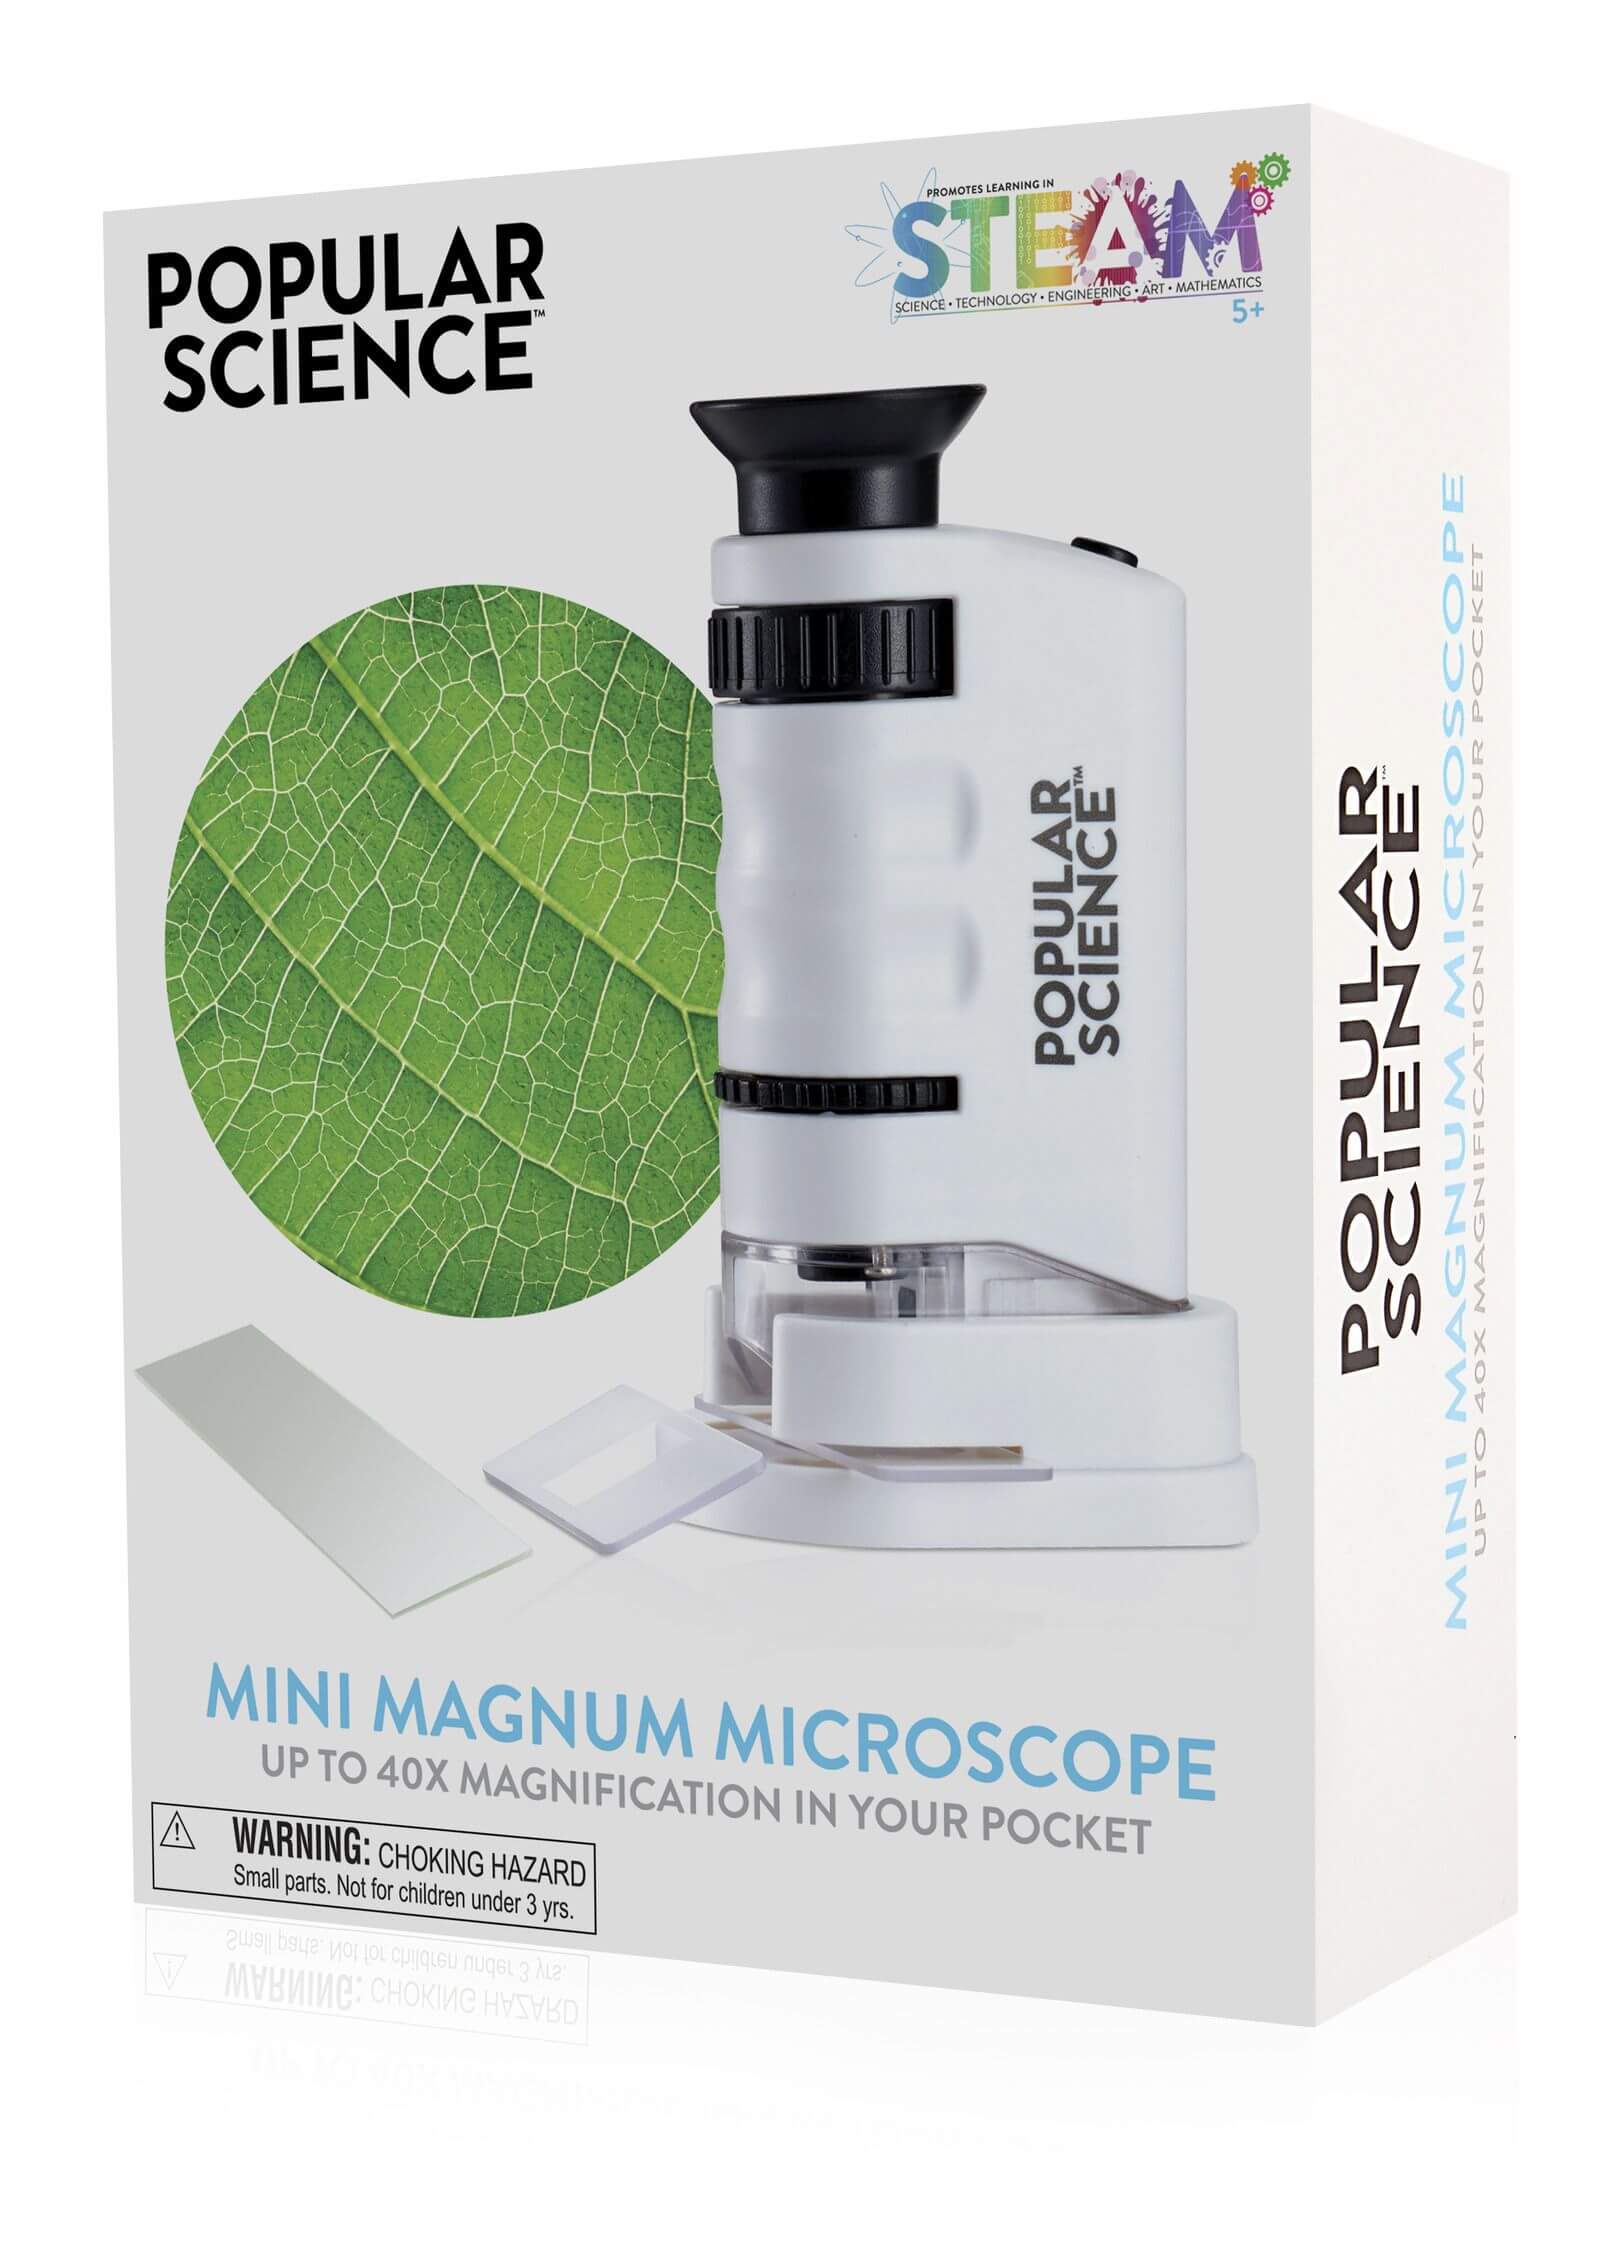 Pocket Microscope Popular science